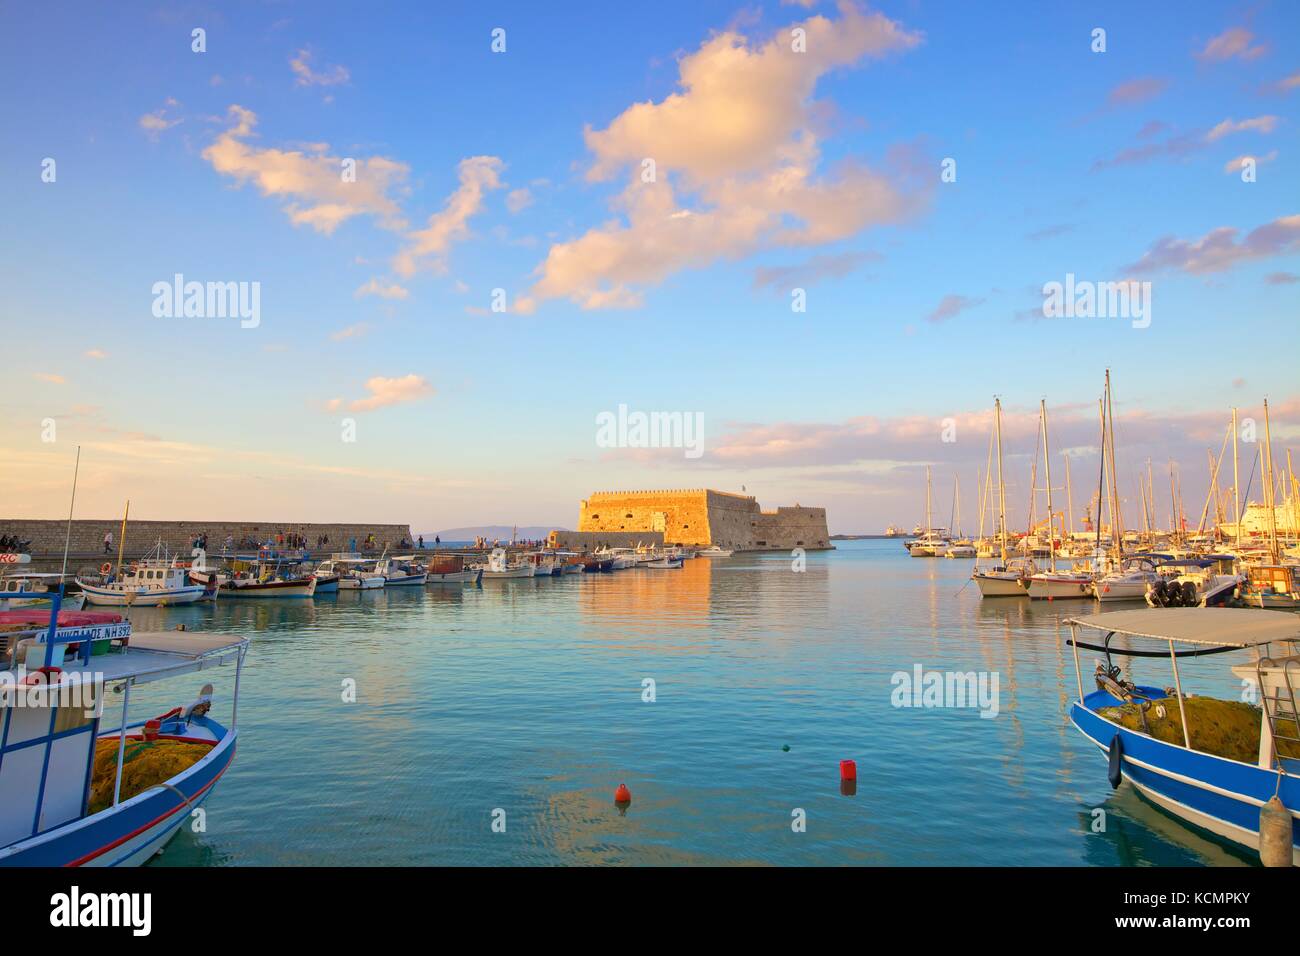 La Voile bordée port vénitien et de la forteresse, Héraklion, Crète, îles grecques, Grèce, Europe Banque D'Images